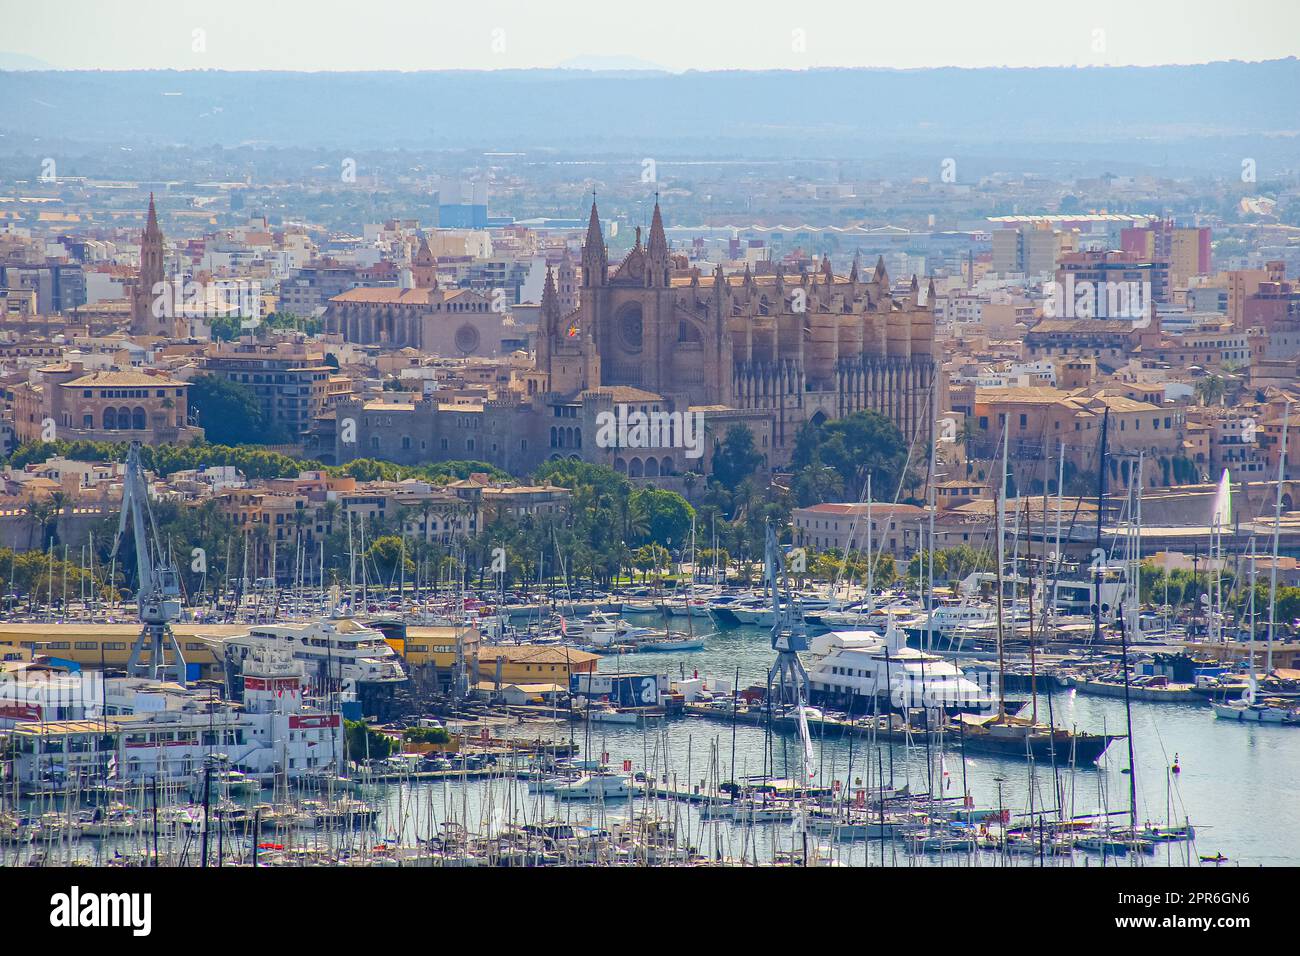 Vue aérienne du port de Palma de Majorque dans les îles Baléares avec La Seu, la cathédrale gothique médiévale de Majorque dépassant au-dessus de la M Stock Photo